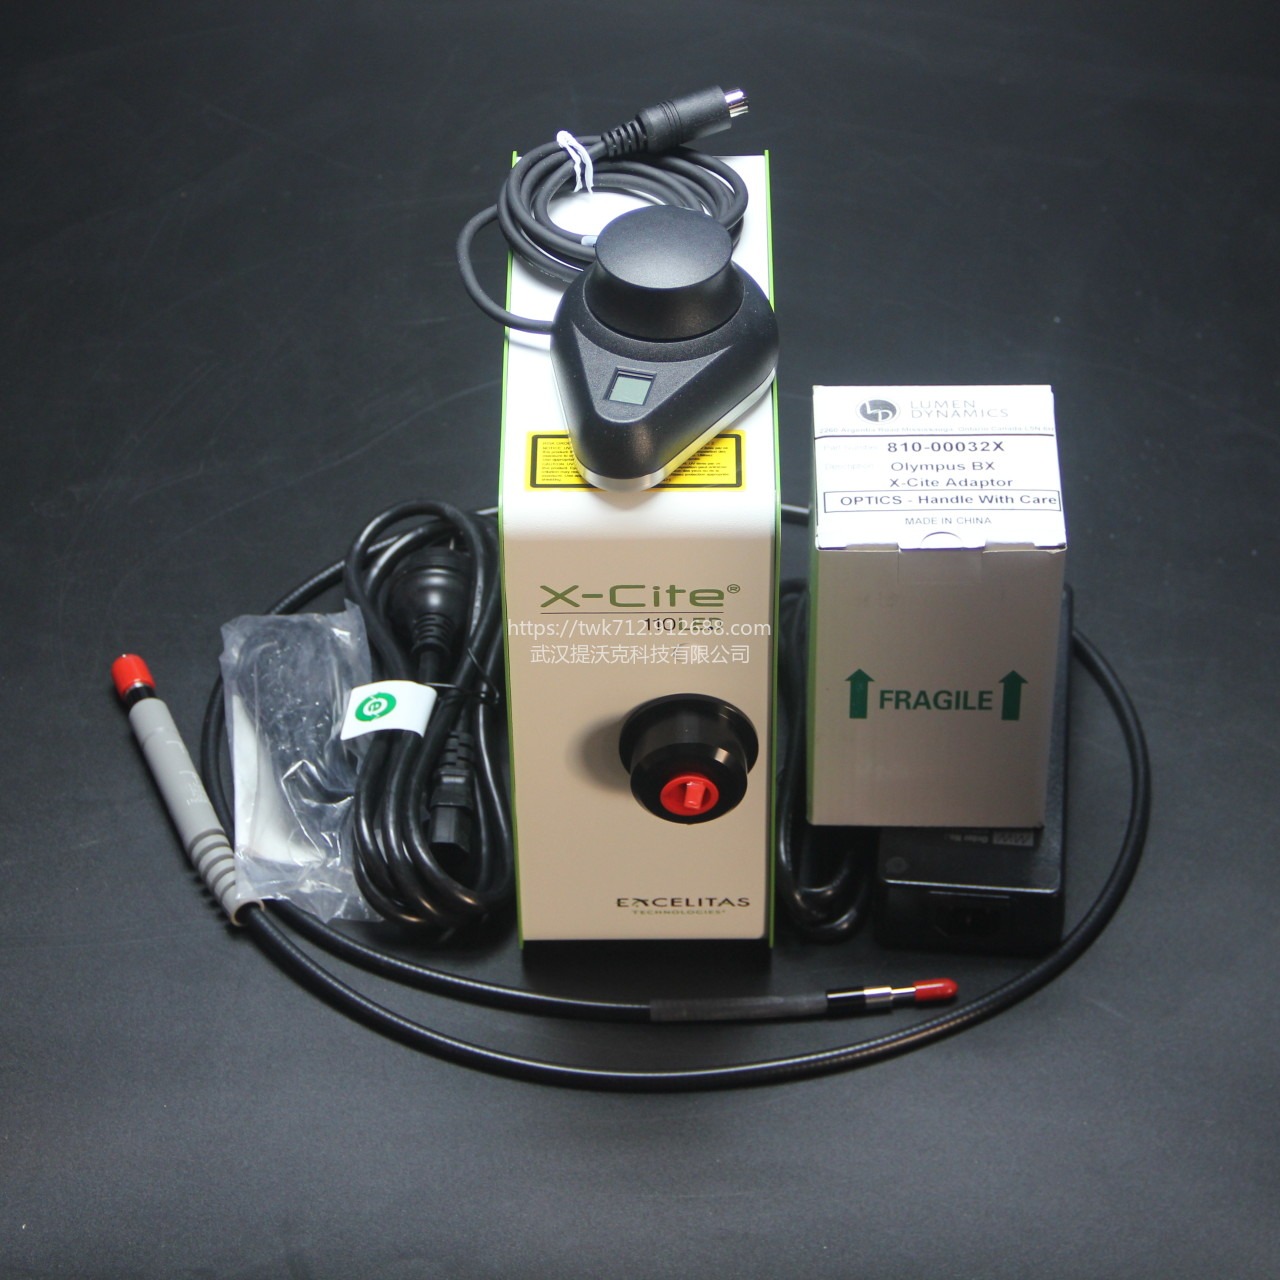 Excelitas 宽屏照明系统 X-Cite 110LED显微镜光源系统 荧光光源图片